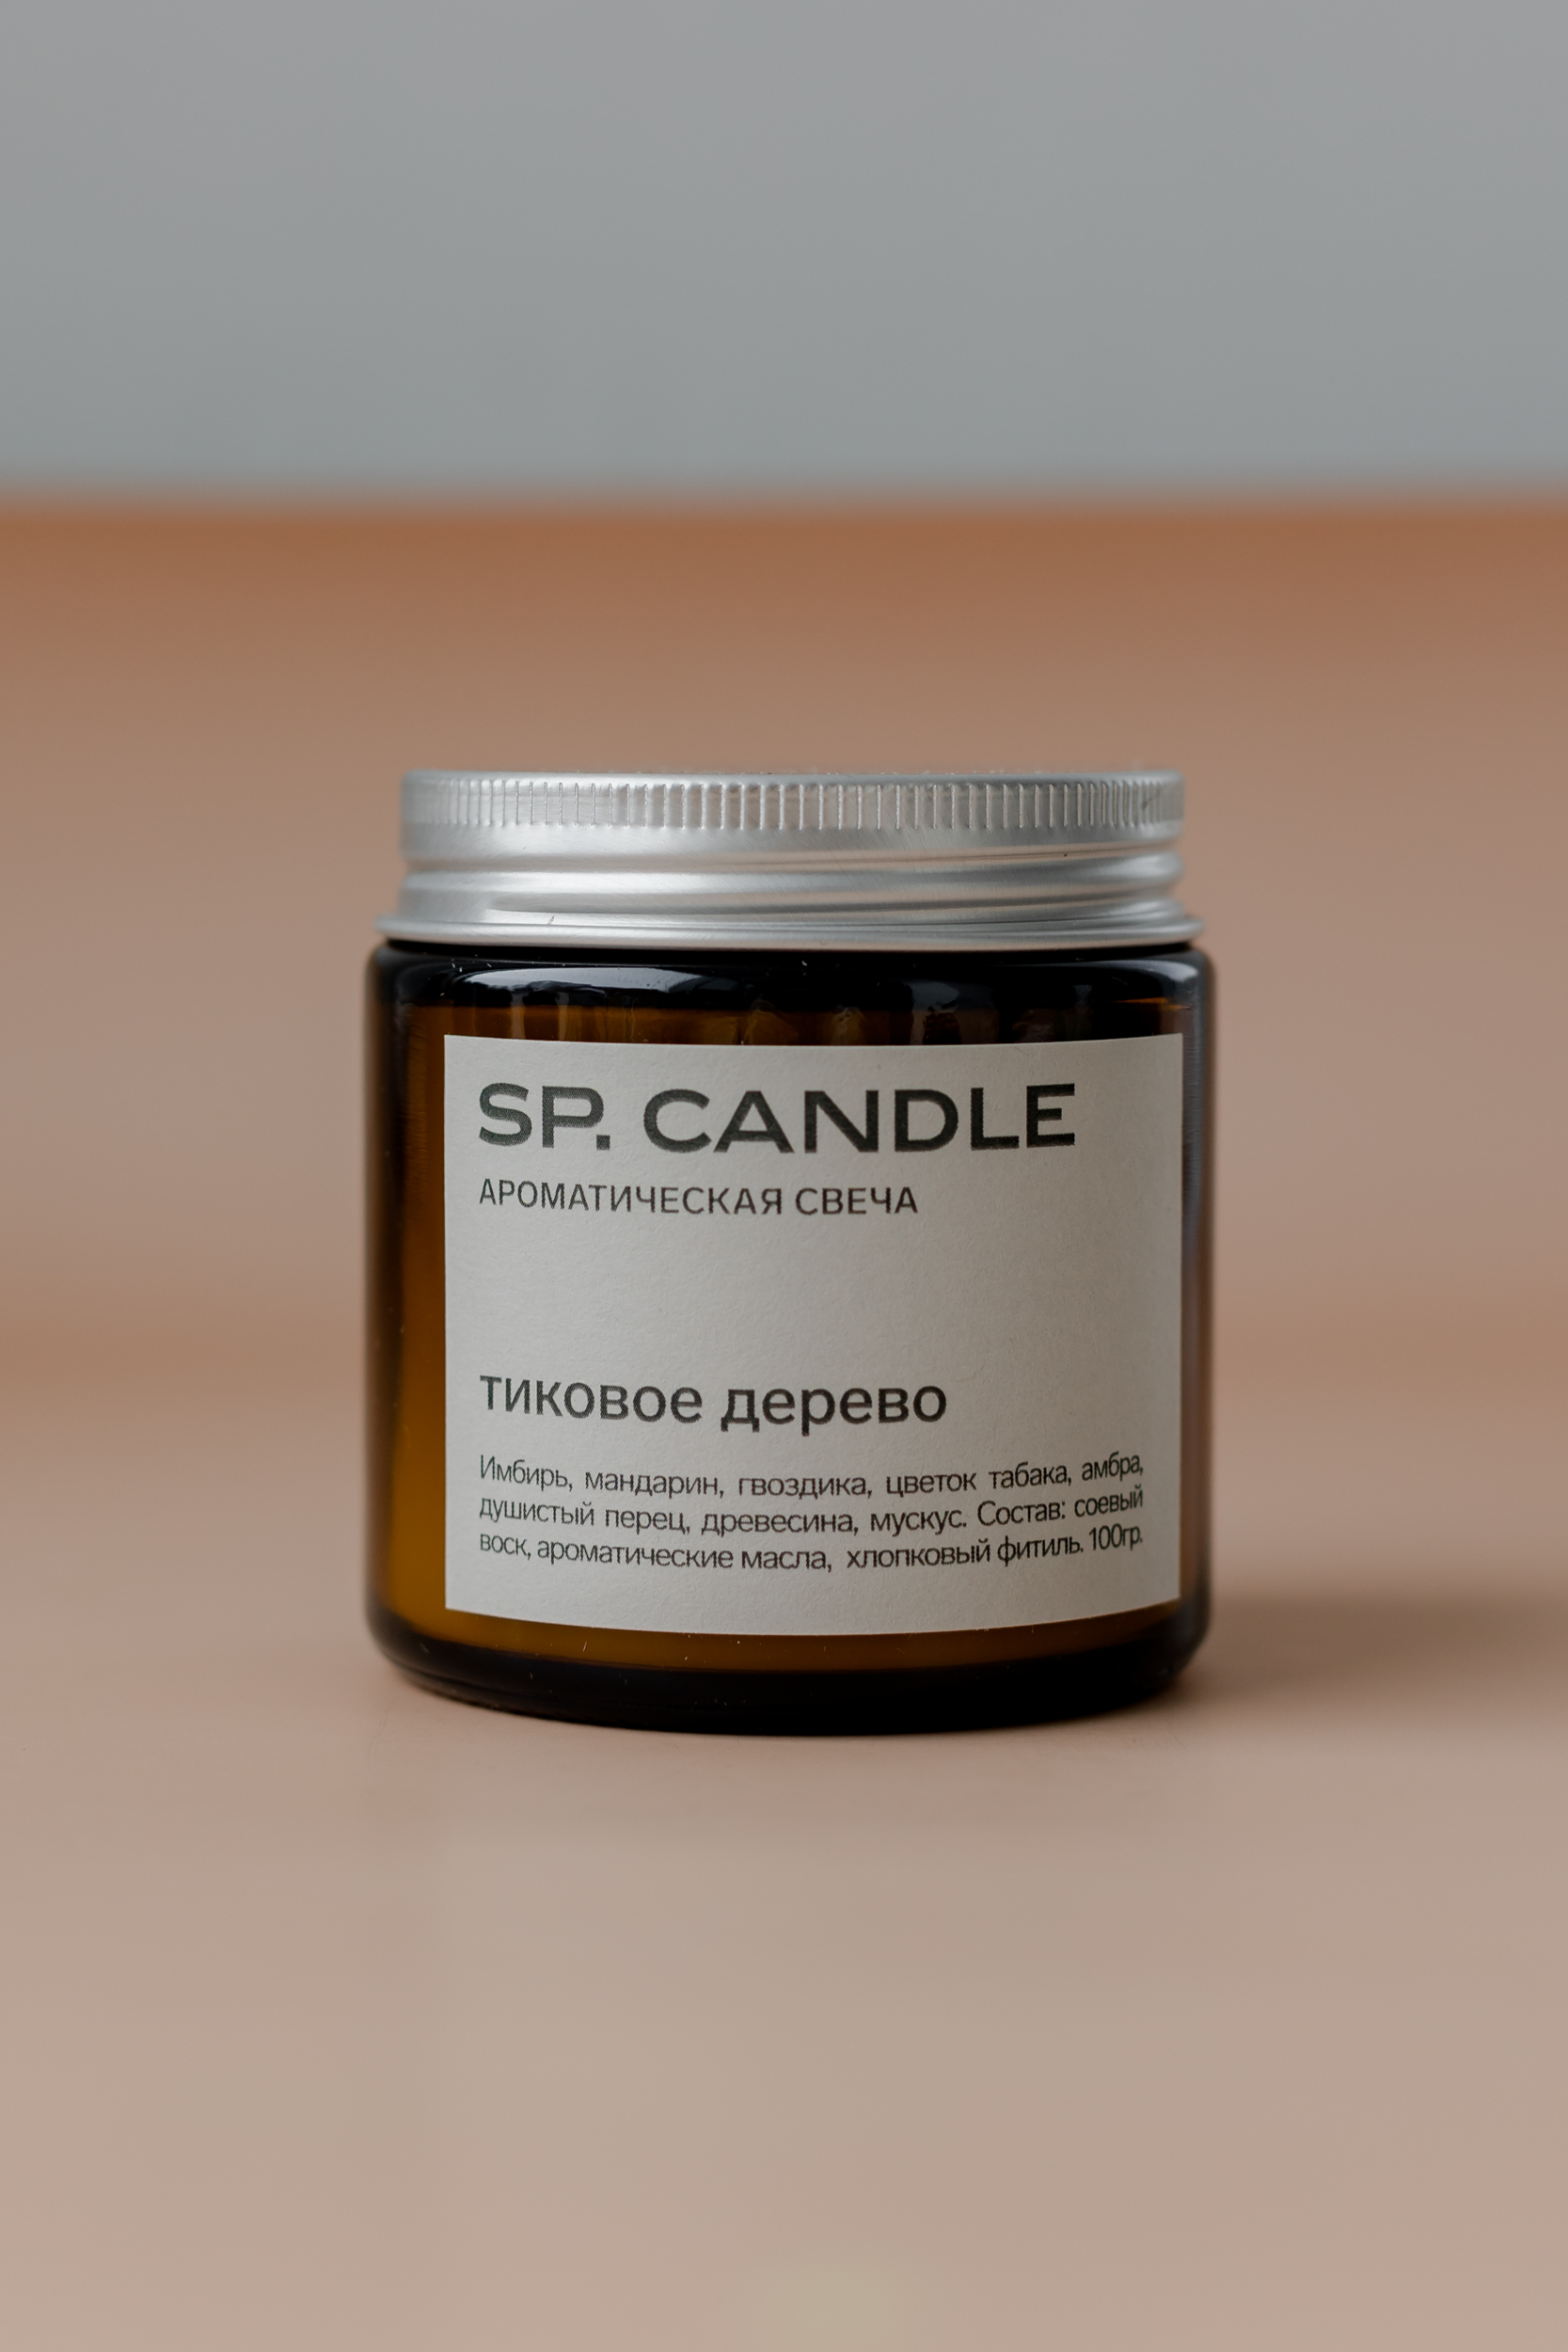 SP. CANDLE Ароматическая свеча Тиковое дерево, 100г - фото 1